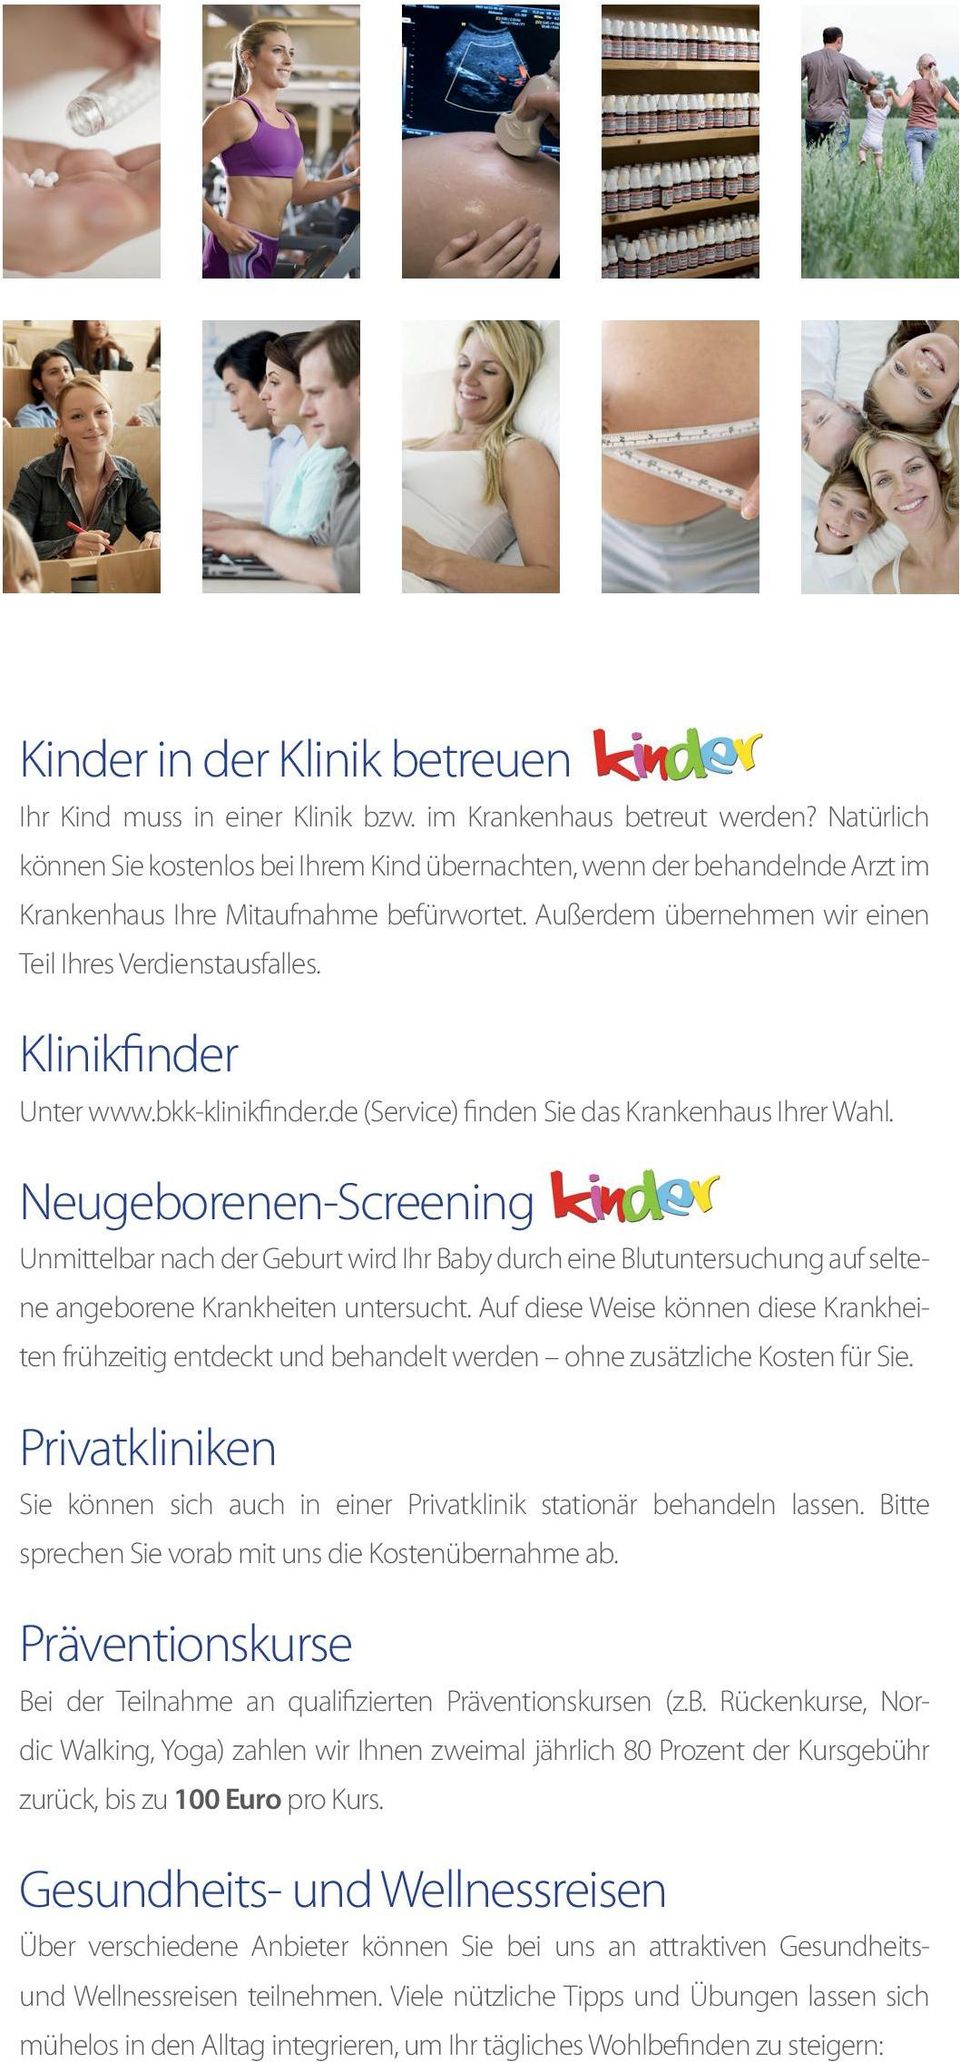 Klinikfinder Unter www.bkk-klinikfinder.de (Service) finden Sie das Krankenhaus Ihrer Wahl.